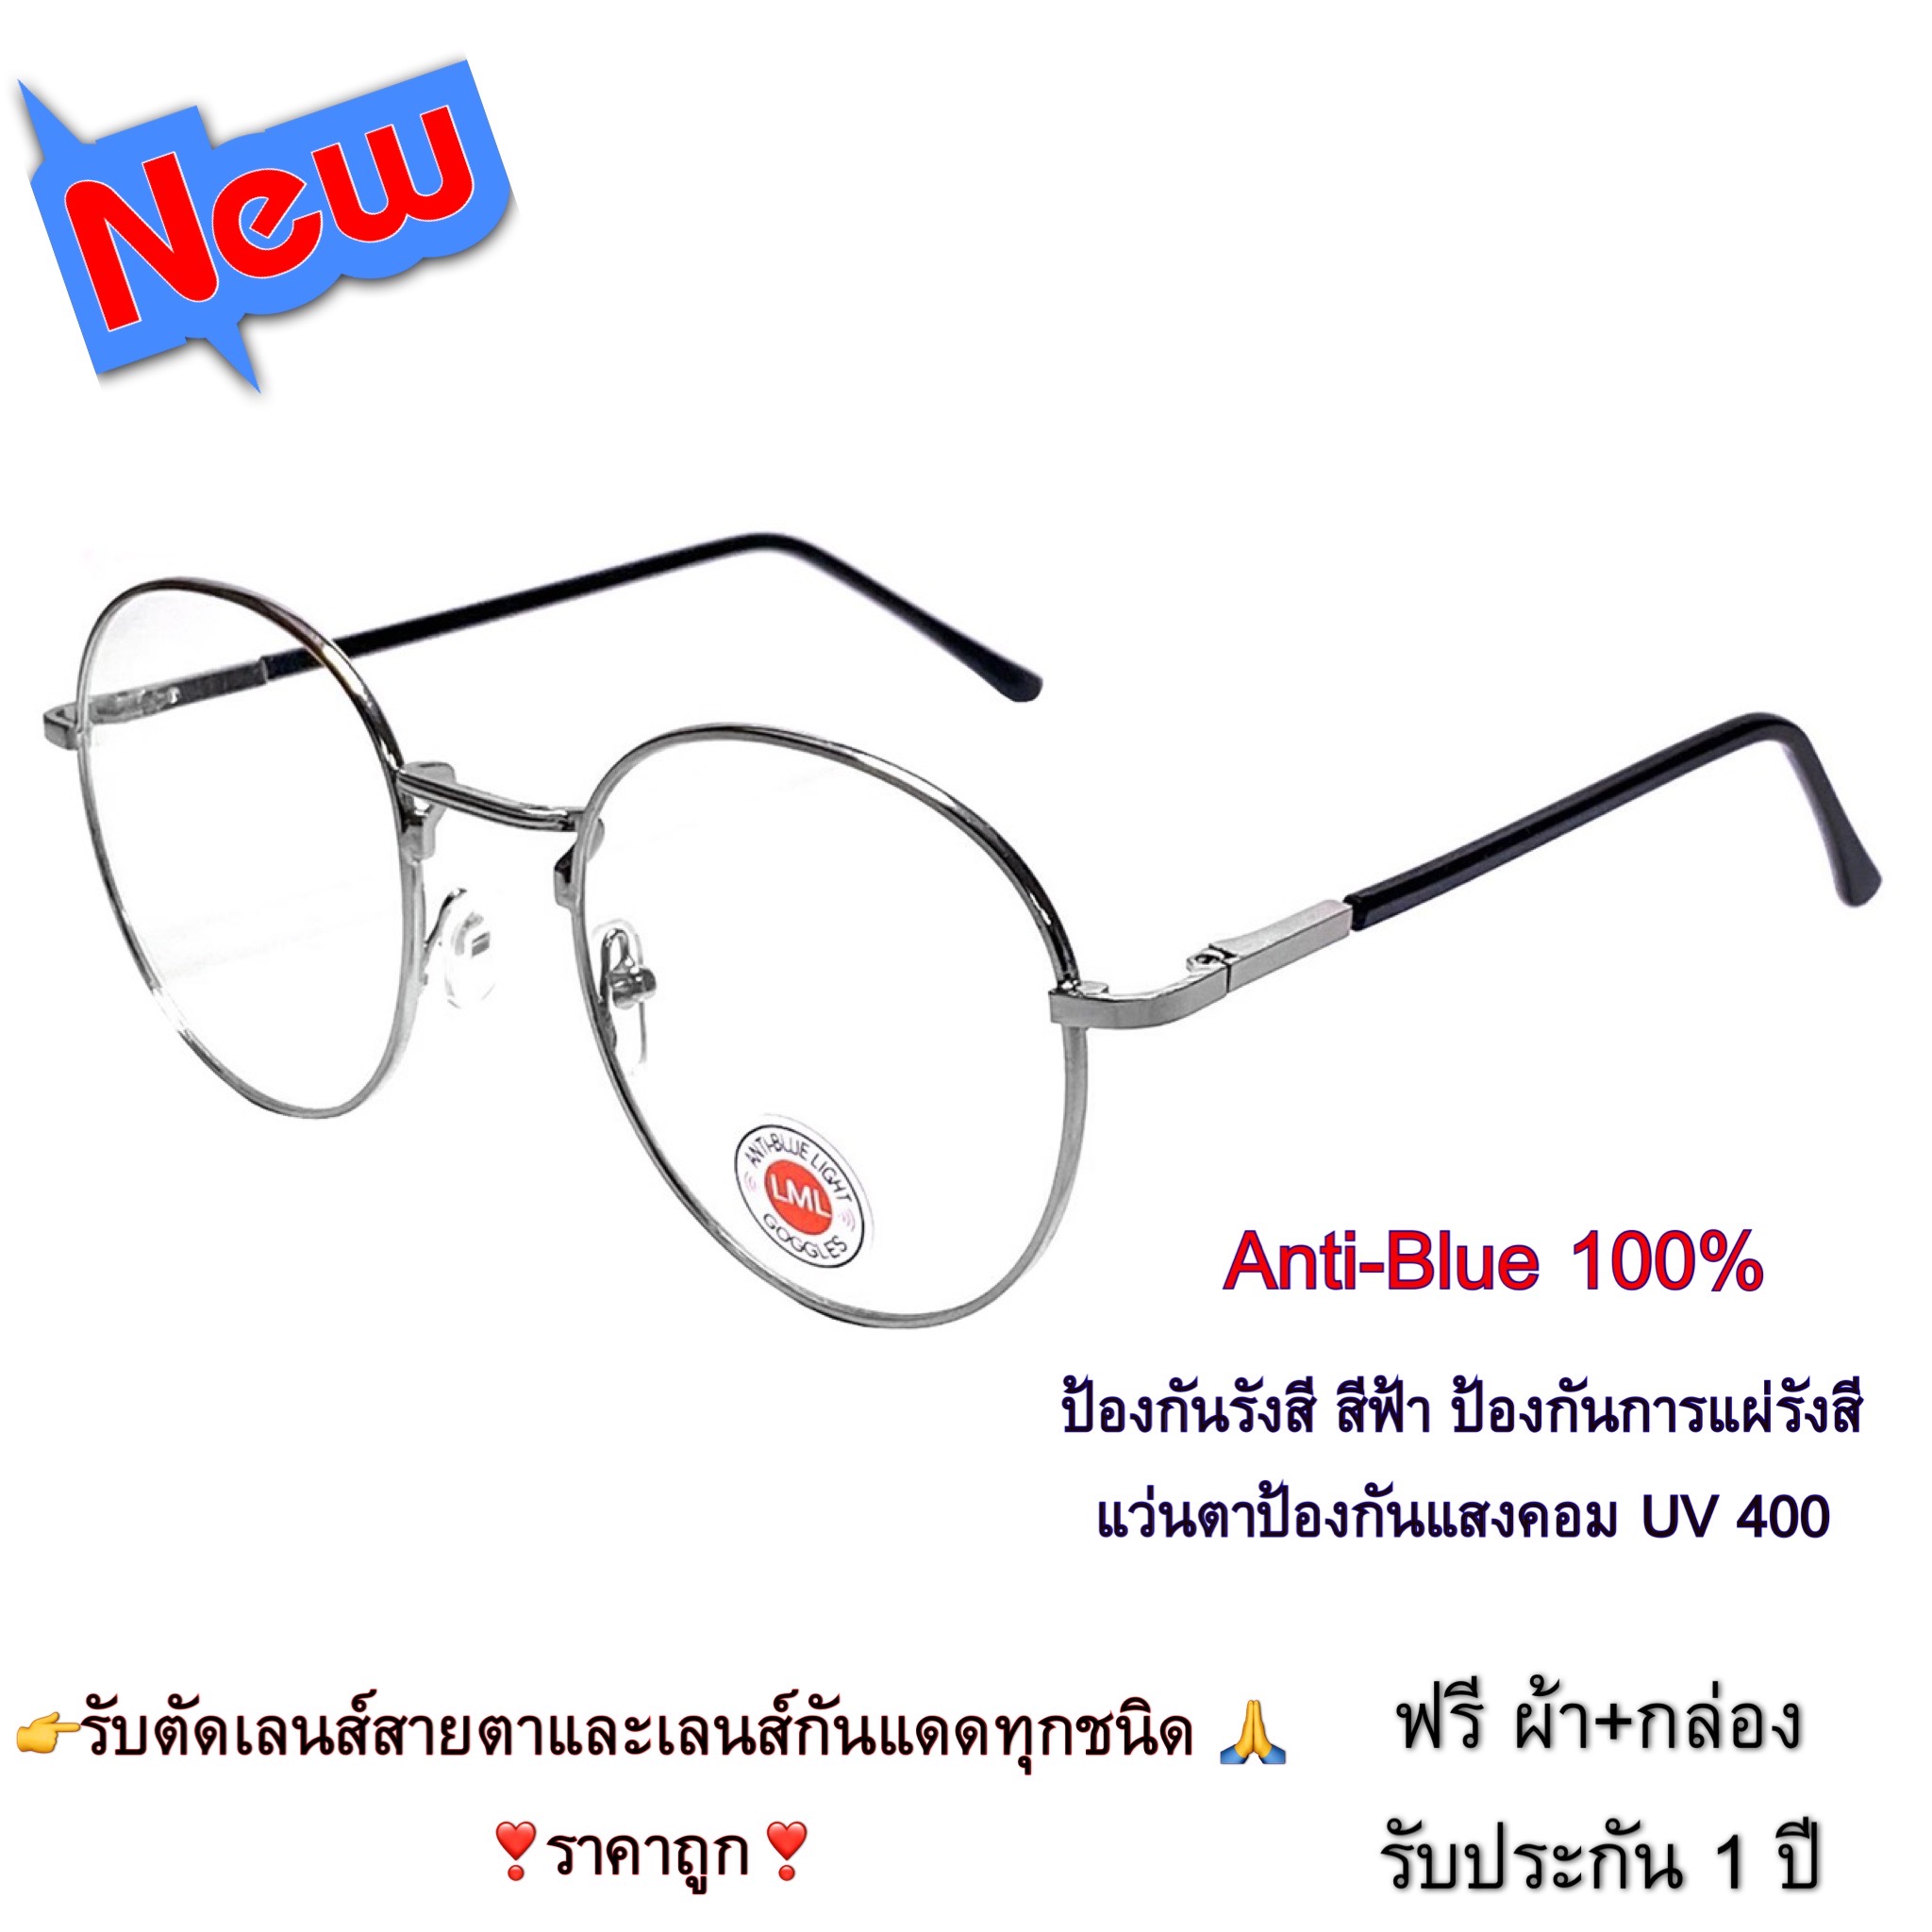 แว่นตา แว่นกรองแสงสีฟ้า แว่นกรองแสงคอม รุ่น 343 Stainless Steel ขาสปริง Super Blue Block กรองแสง สีฟ้า สูงสุด95% กัน UV 100% Glasses ถนอมสายตา